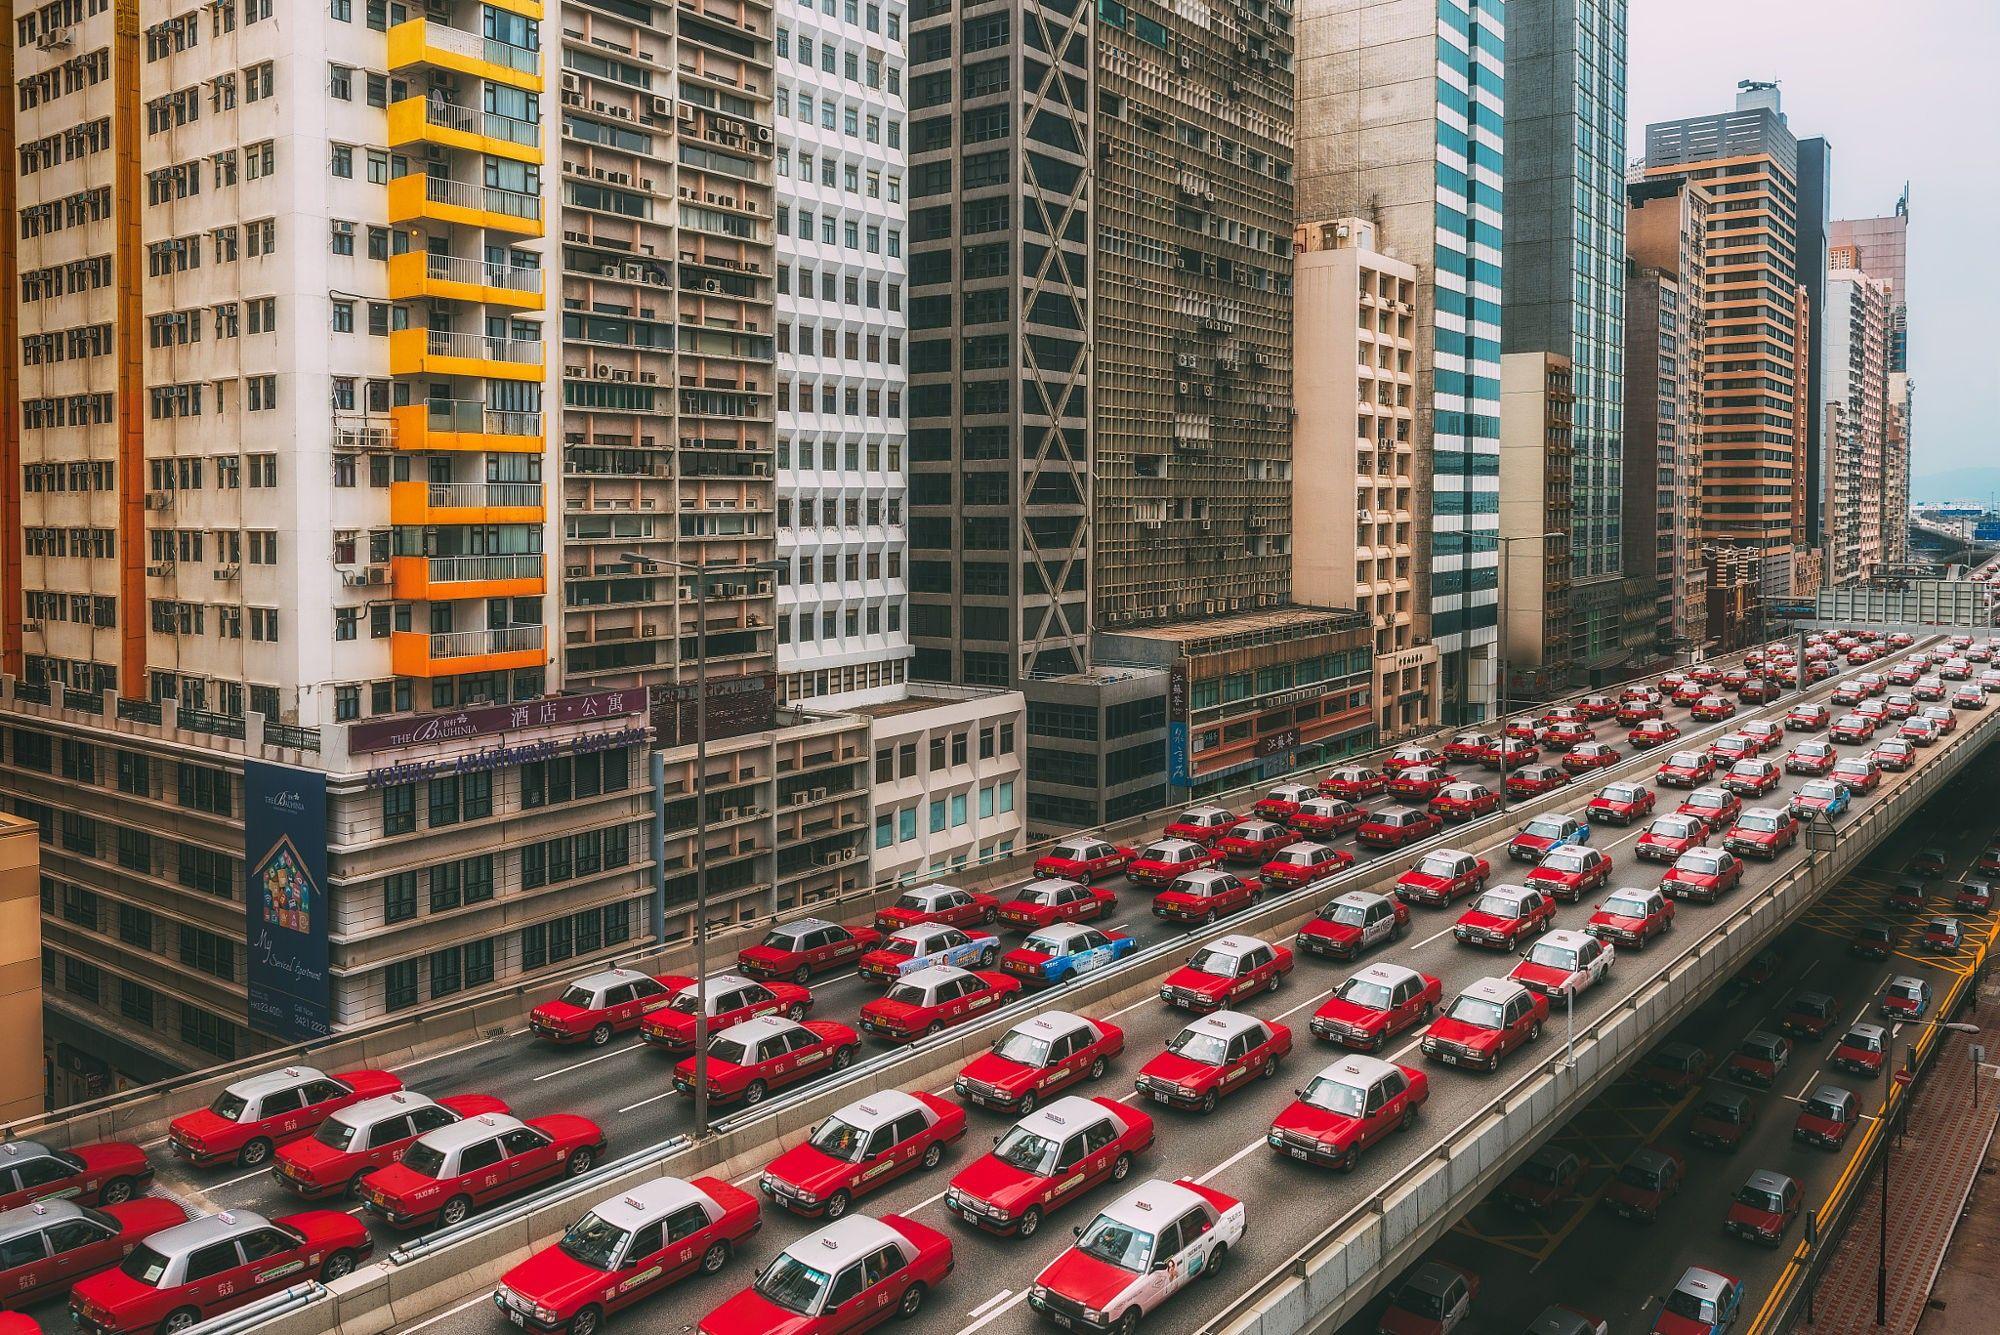 taxi, Hong Kong, City, Cityscape, Vehicle, Red cars, China